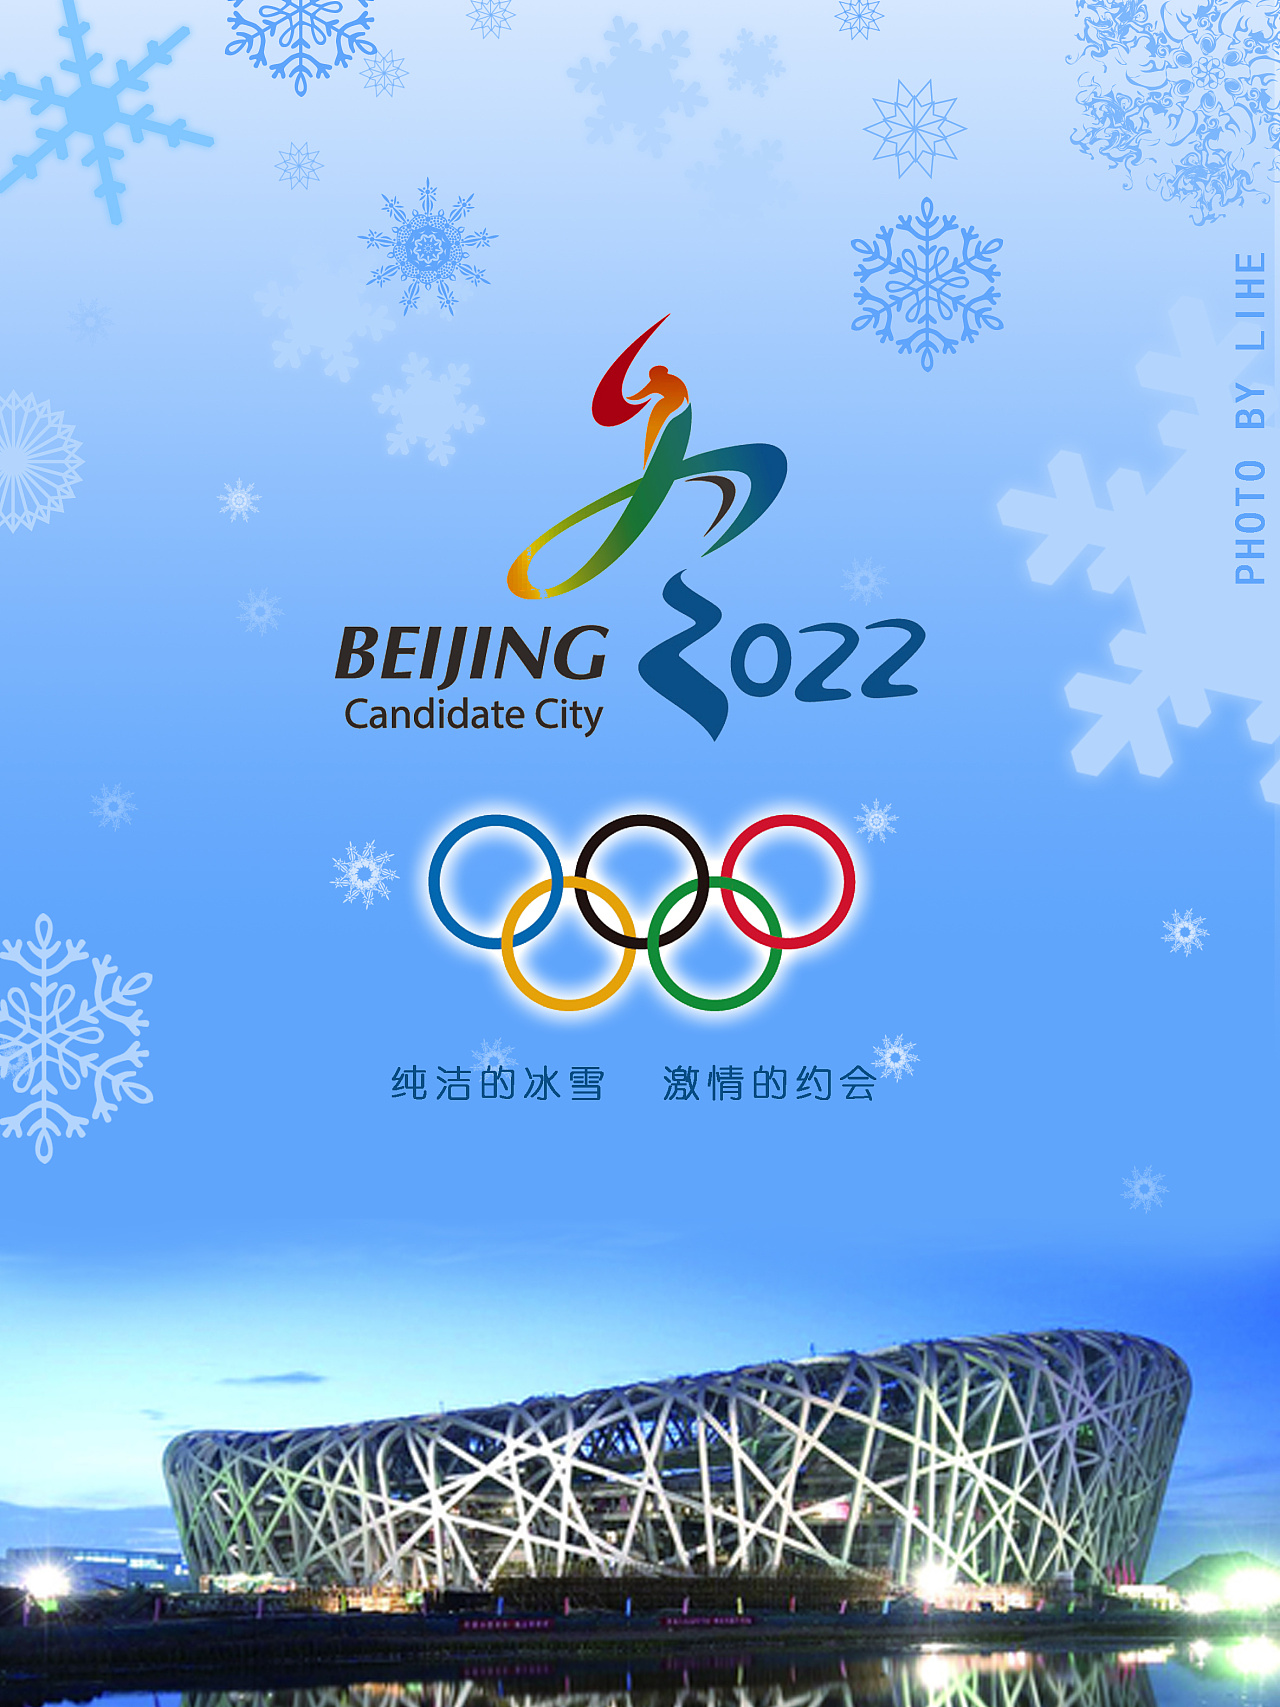 2022年奥运会图片海报图片